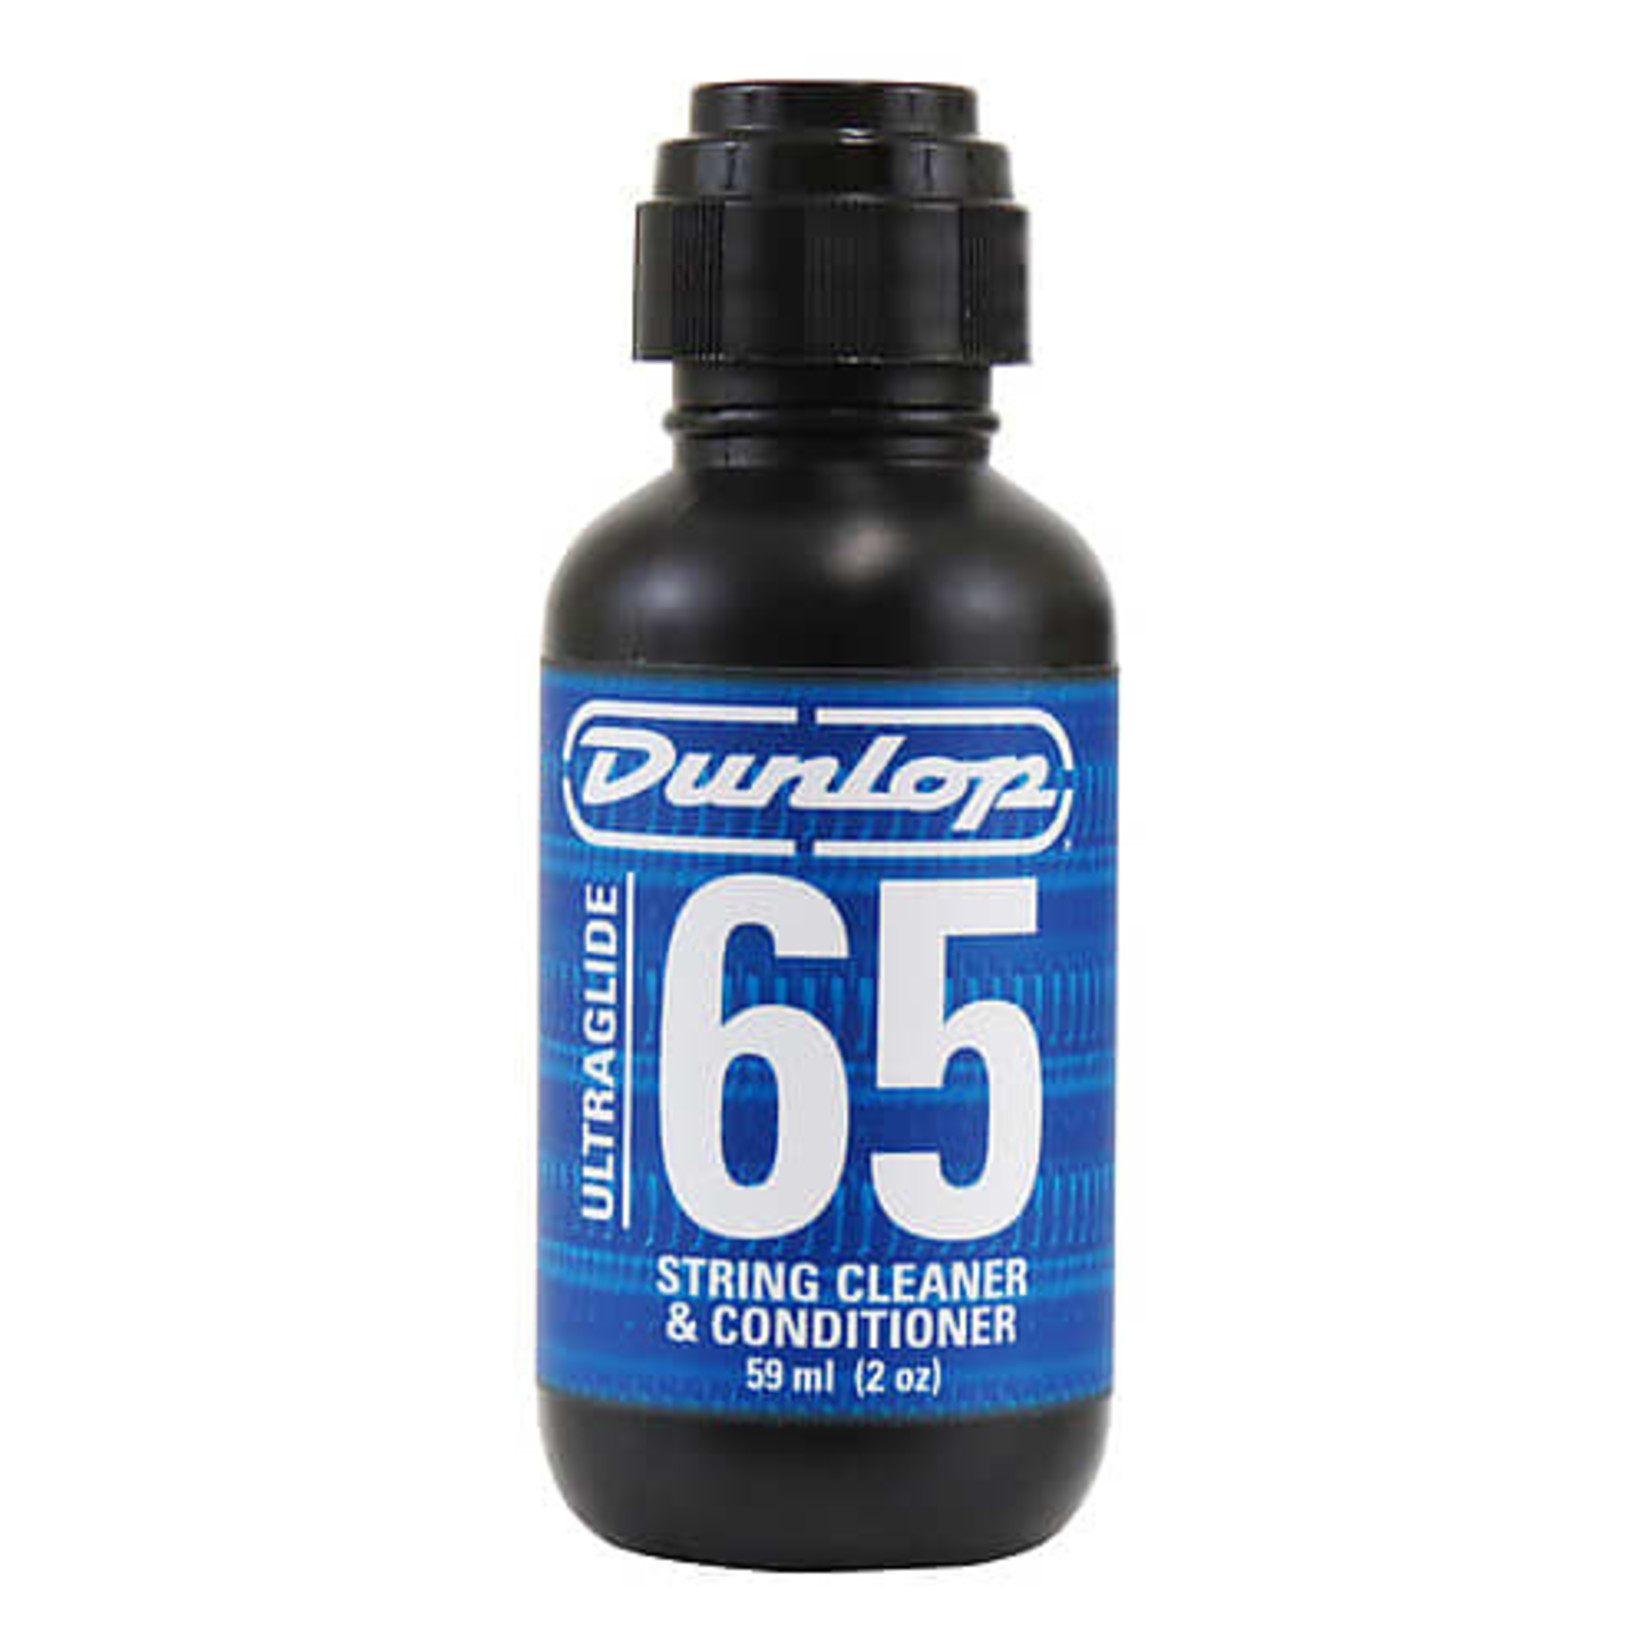 Dunlop Dunlop Ultraglide String Cleaner & Conditioner